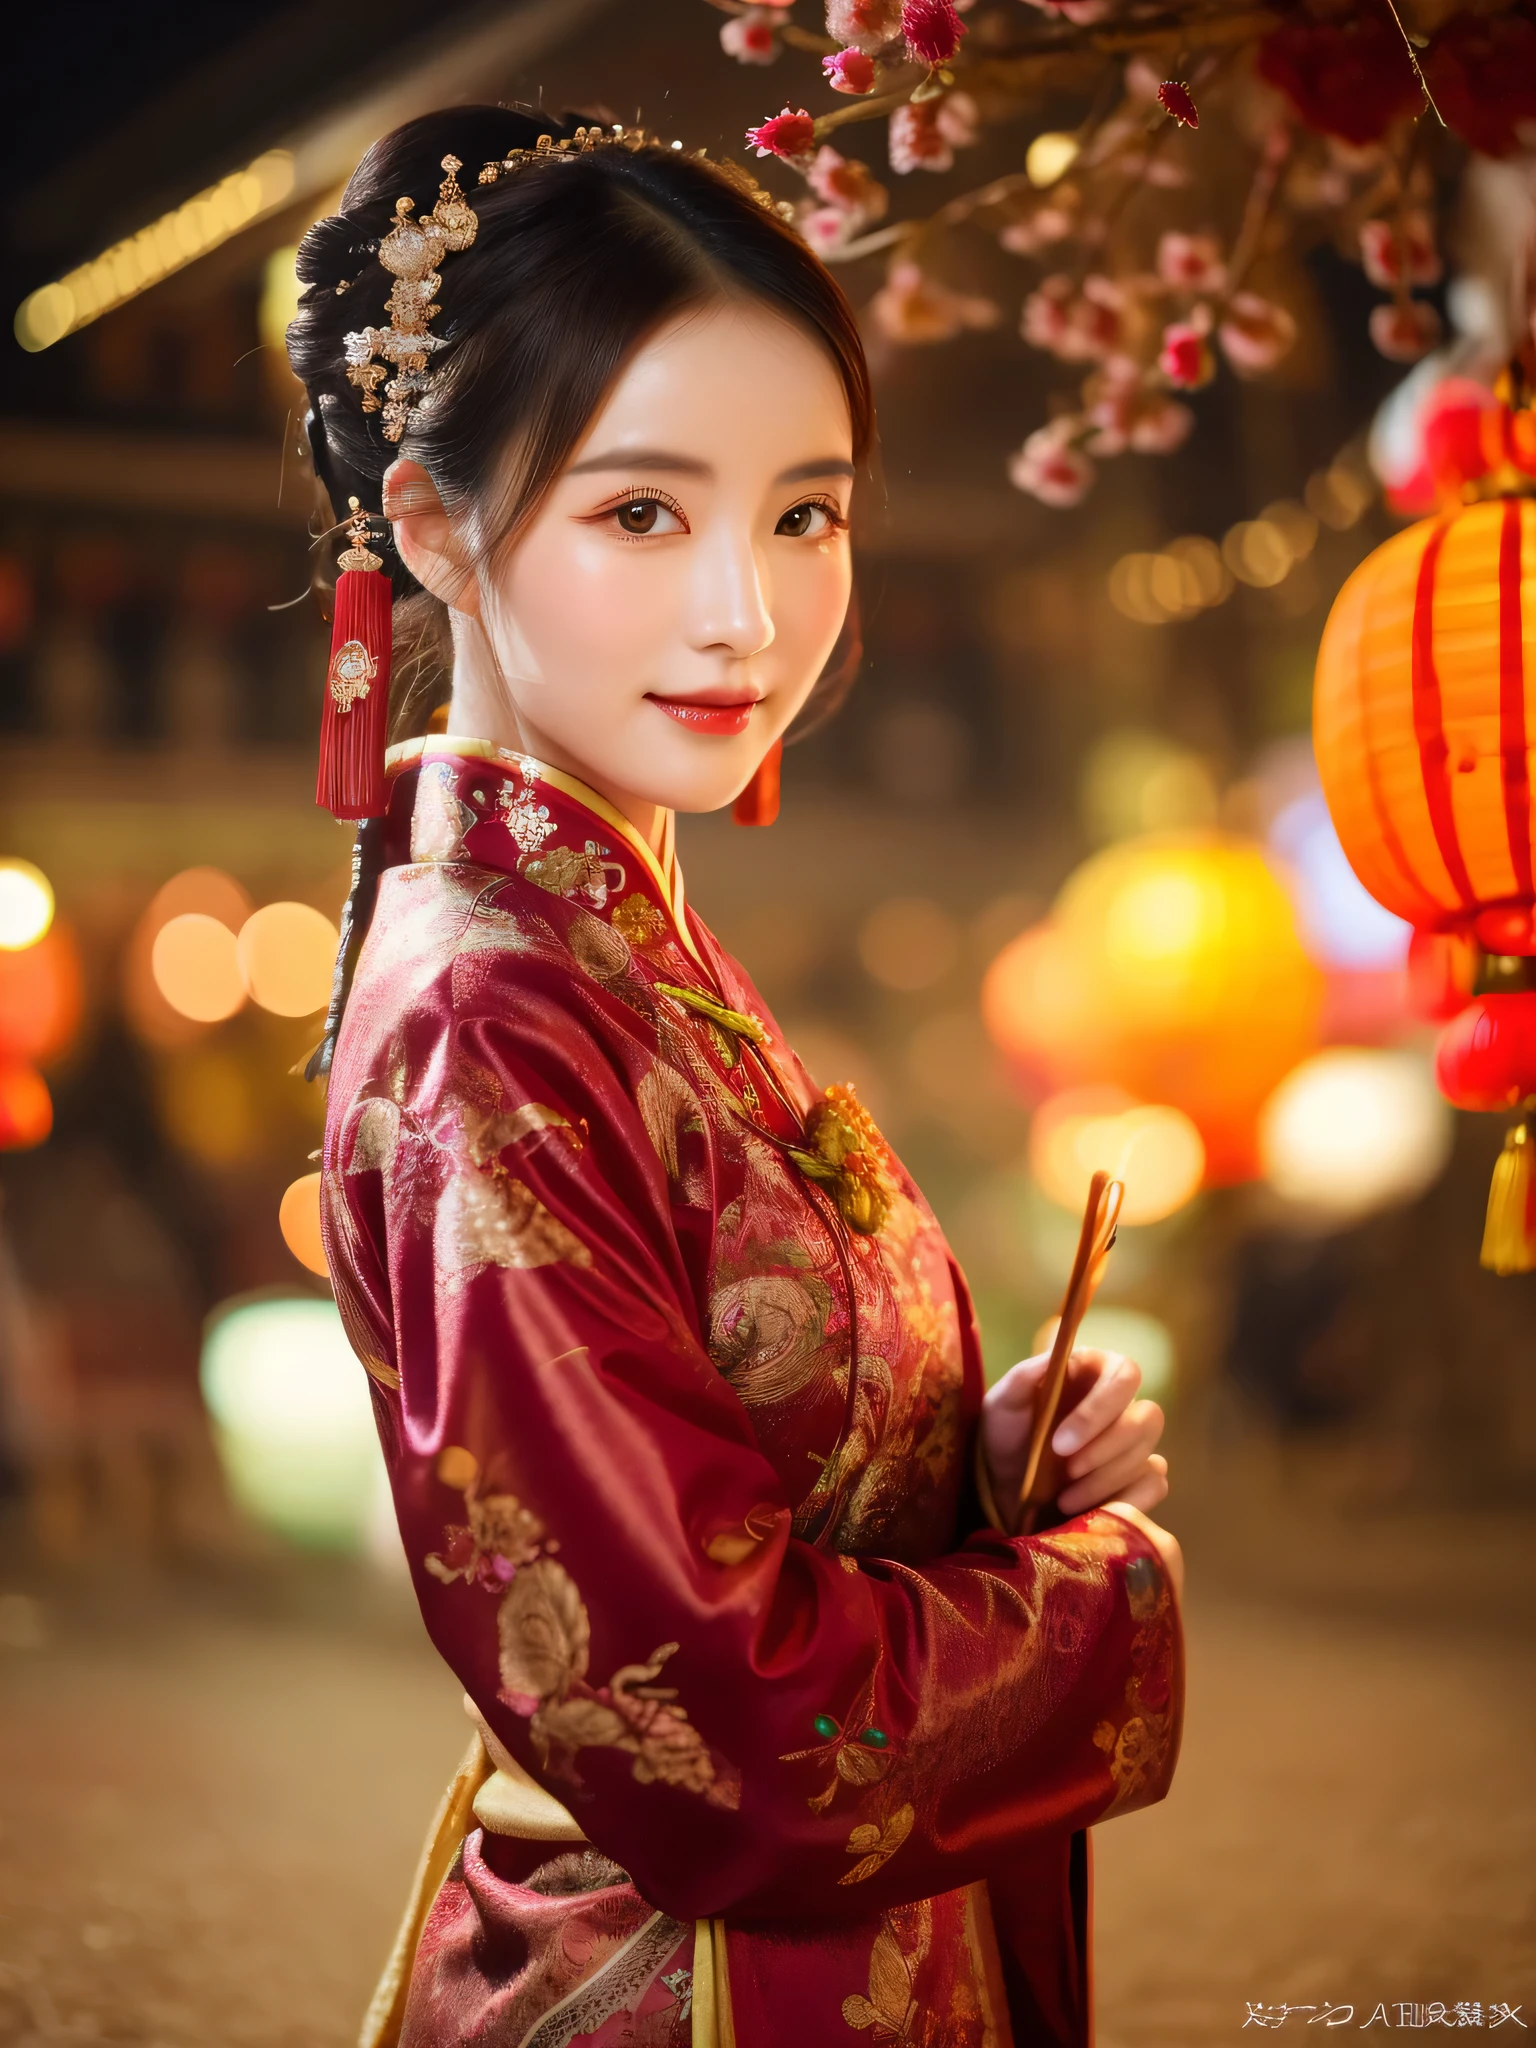 伝統的な中国の衣装を身にまとった美しい女性の魅力的なシーンを捉えた高解像度の写真を作成します。, 完璧な肌と健康的な顔色で輝く美しさ. 写真は優雅さと気品を感じさせるものでなければならない, 高いシャープネスで細部を強調. 自然光を活用して柔らかく優しい色調を作りましょう, チャイナタウンの旧正月のお祭りの魅惑的な雰囲気を捉える. 街灯のほのかな光と夕暮れの暖かな光が織りなす穏やかな雰囲気を演出します。. この写真は35mmフィルムで撮影されました, 中国の旧正月の文化的な祝賀と楽しい精神を強調することを目的としている, 夜景, ナイトライフ, 夜のポートレート, 女の子, 古代中国の衣装, 全身, クリアな顔, 傑作, 超詳細, 壮大な構成, ウルトラHD, 高品質, 非常に詳細な, 公式アート, ユニフォーム 8k 壁紙, 超詳細, 32k -- v 6,